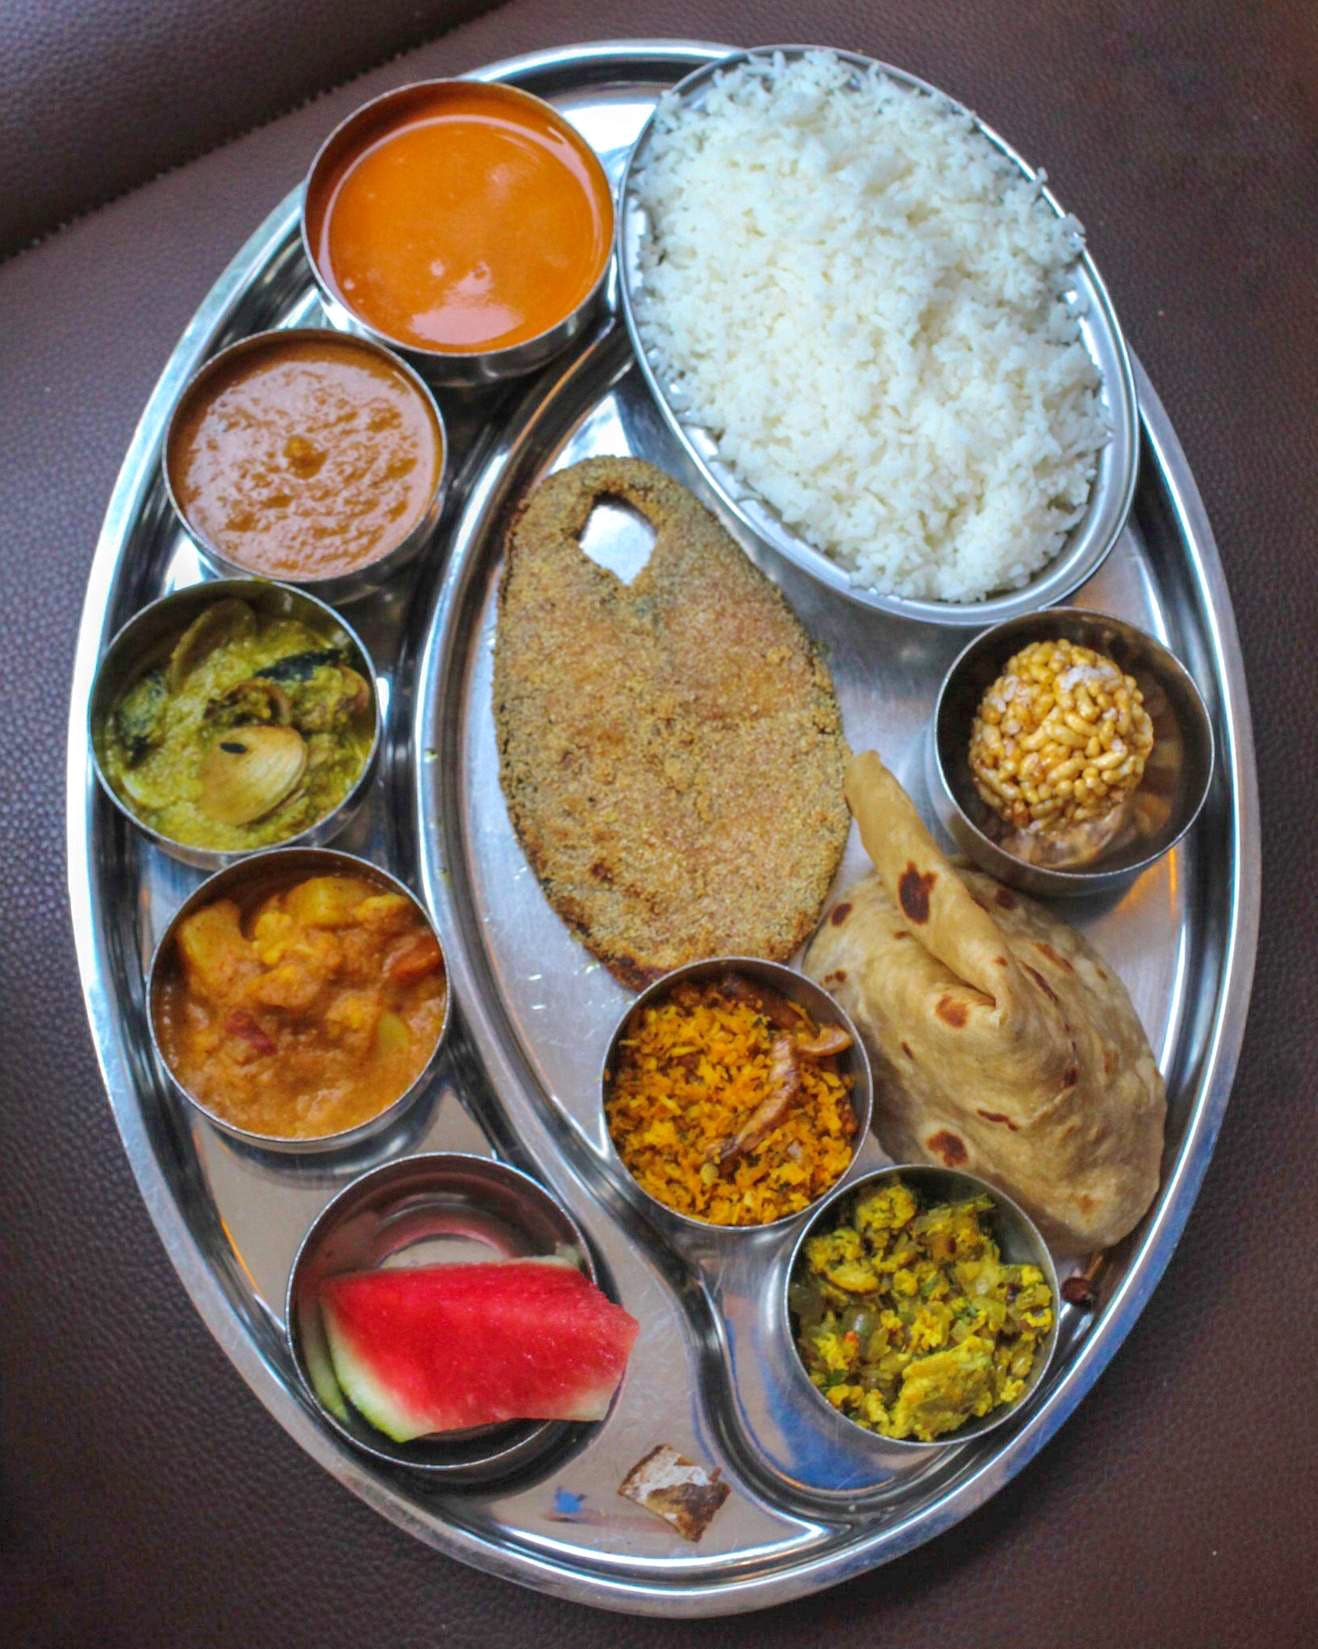 Dish,Food,Cuisine,Meal,Raita,Ingredient,Dal,Lunch,Punjabi cuisine,Nepalese cuisine